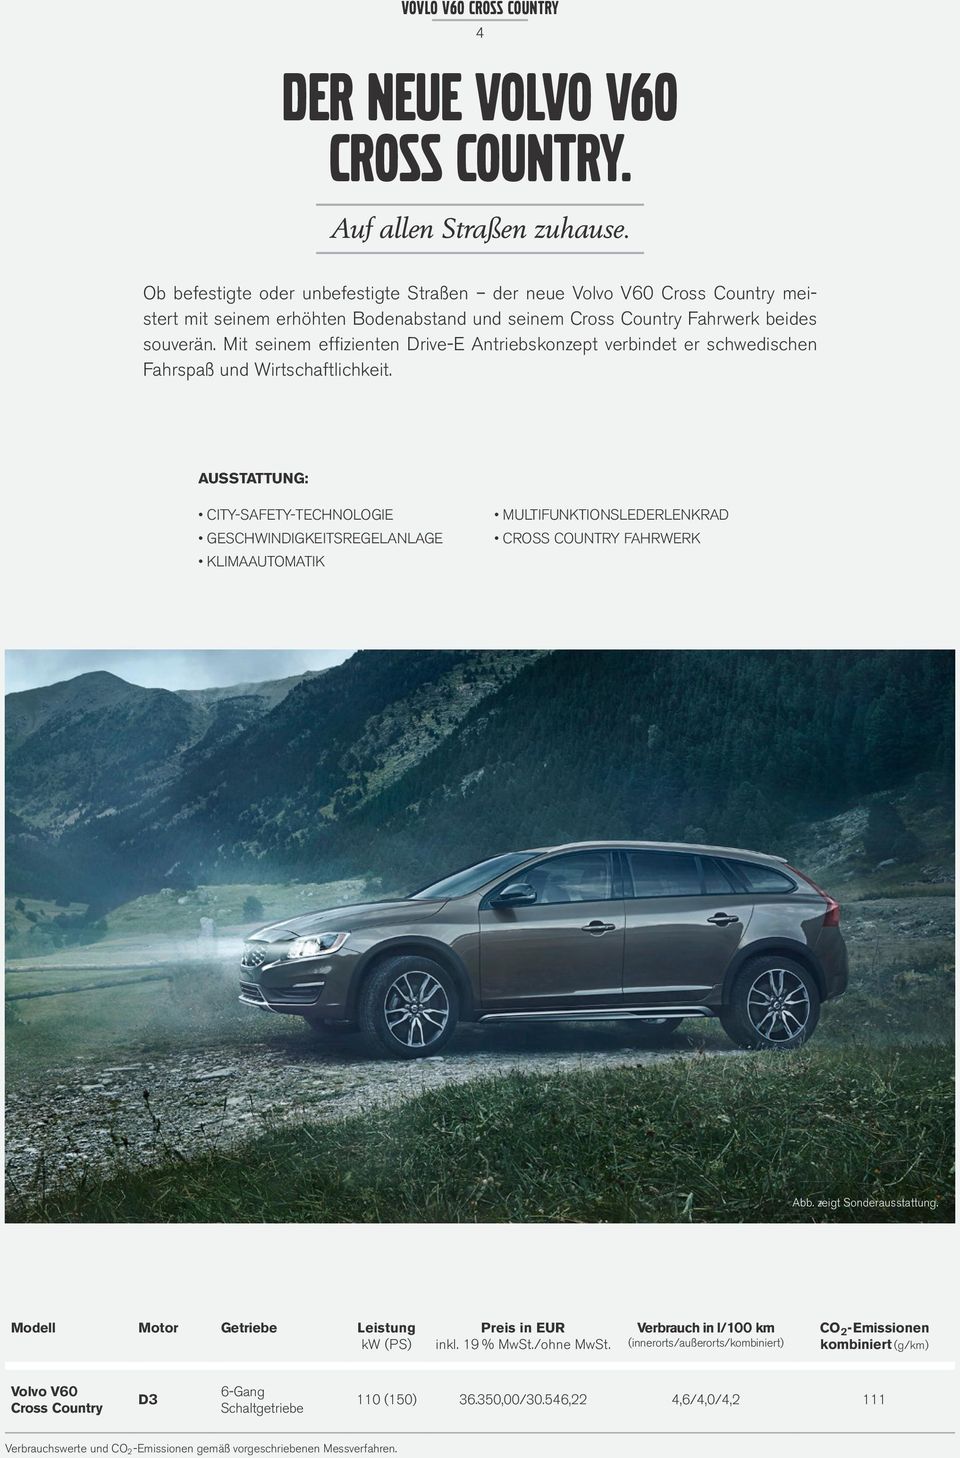 Mit seinem effizienten Drive-E Antriebskonzept verbindet er schwedischen Fahrspaß und Wirtschaftlichkeit.